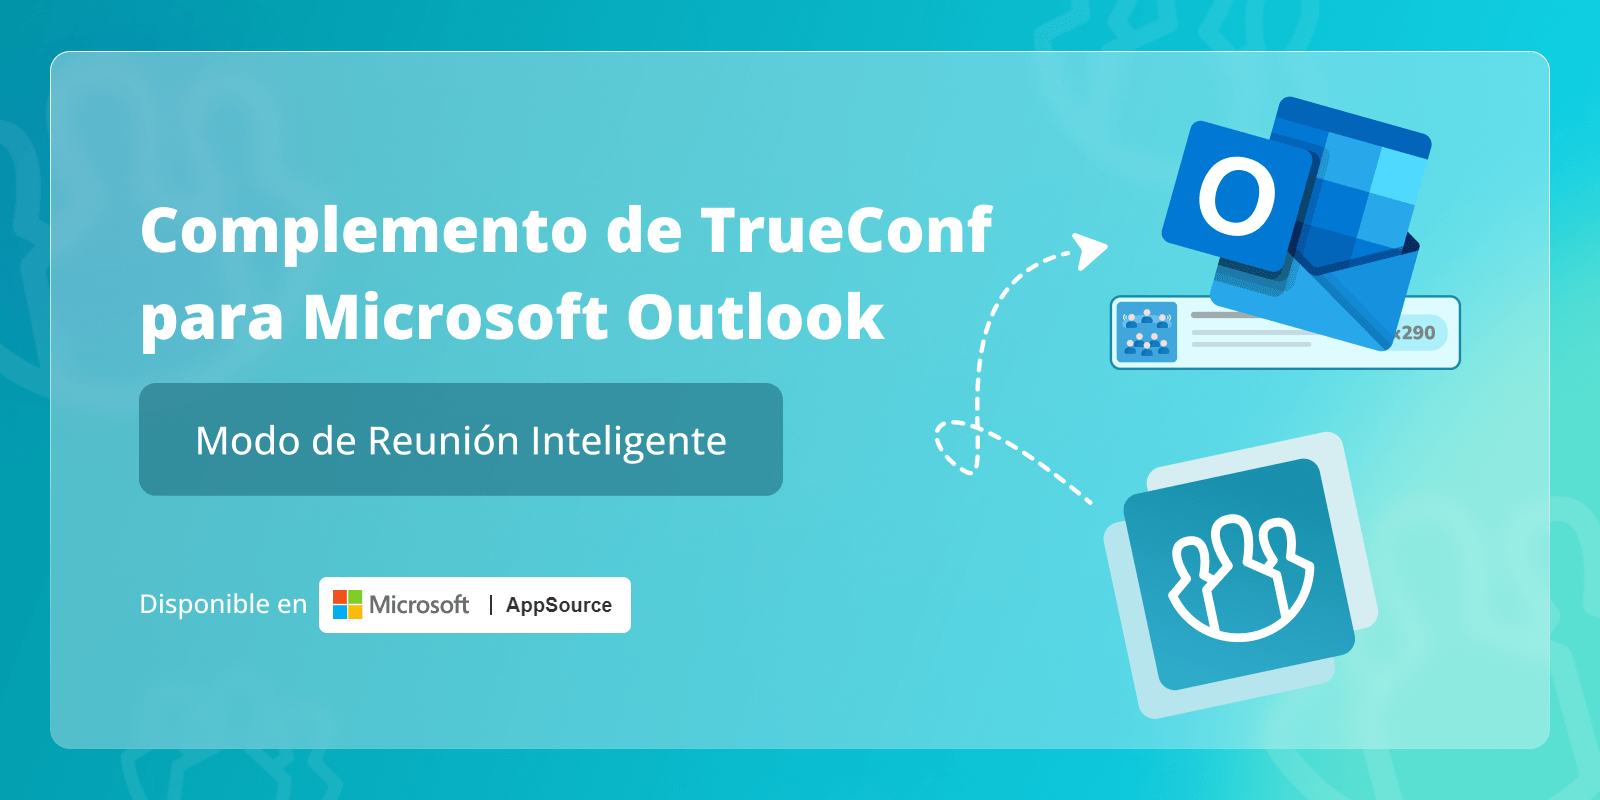 Modo de reunión inteligente en TrueConf para el complemento de Microsoft Outlook 1